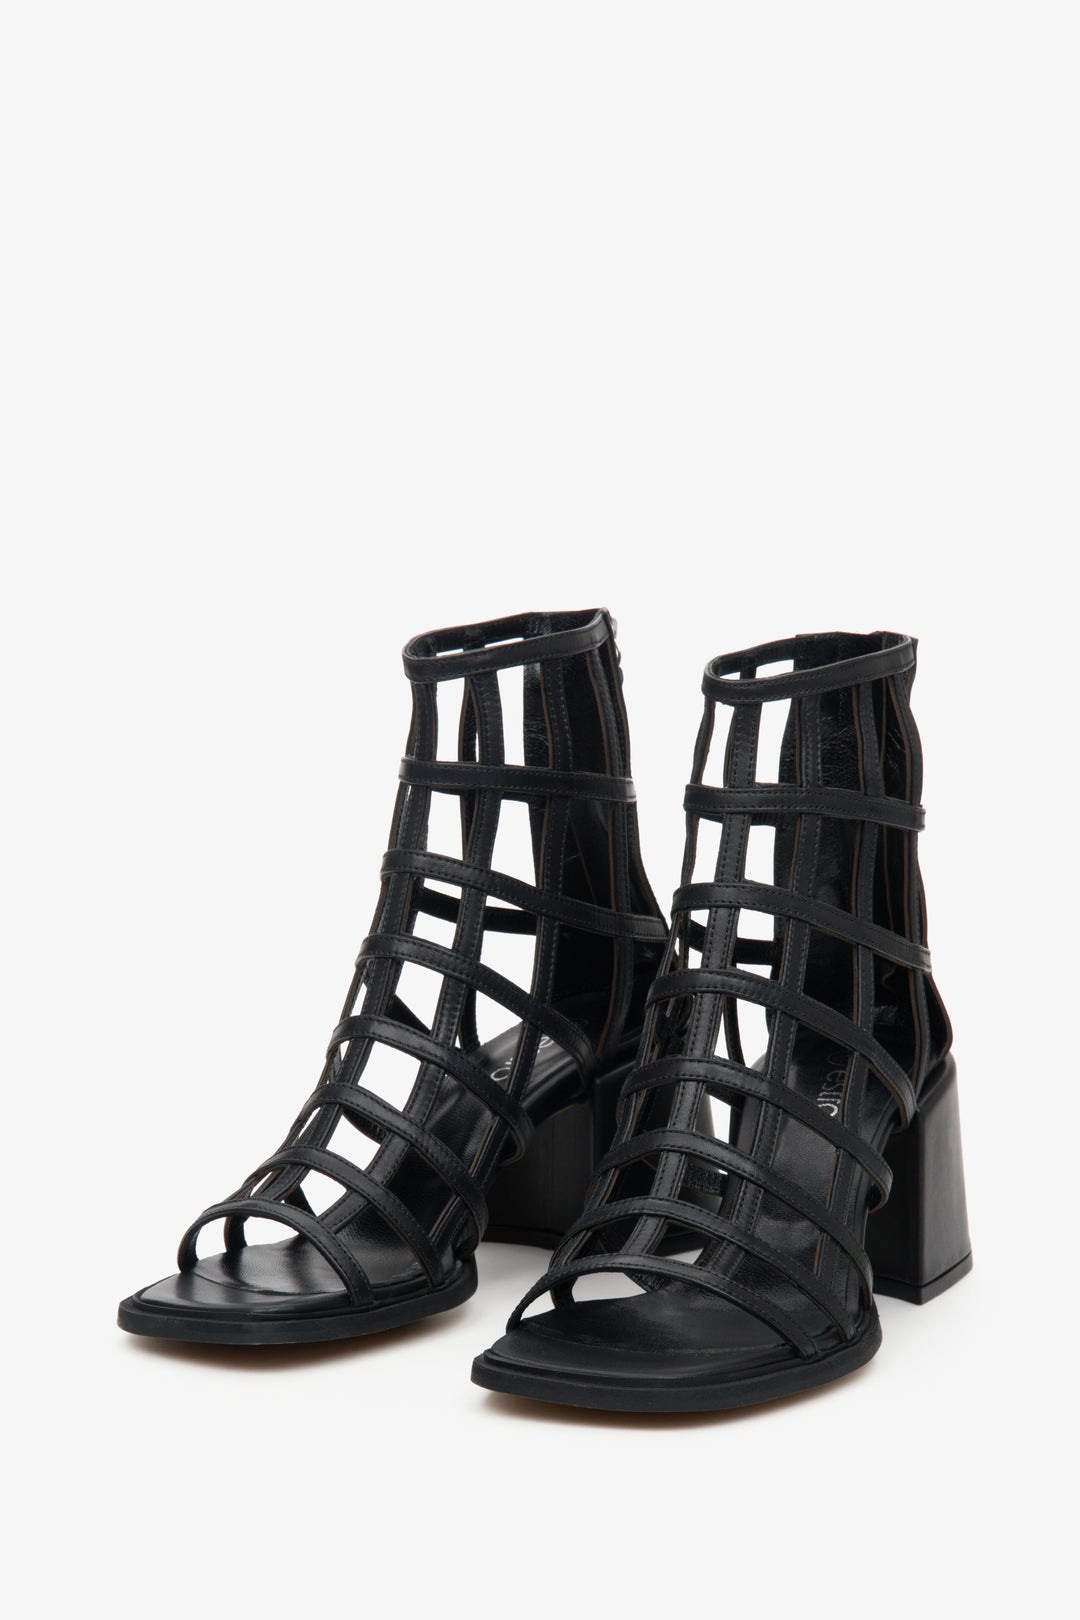 Women's block heel gladiator type sandals in black by Estro.